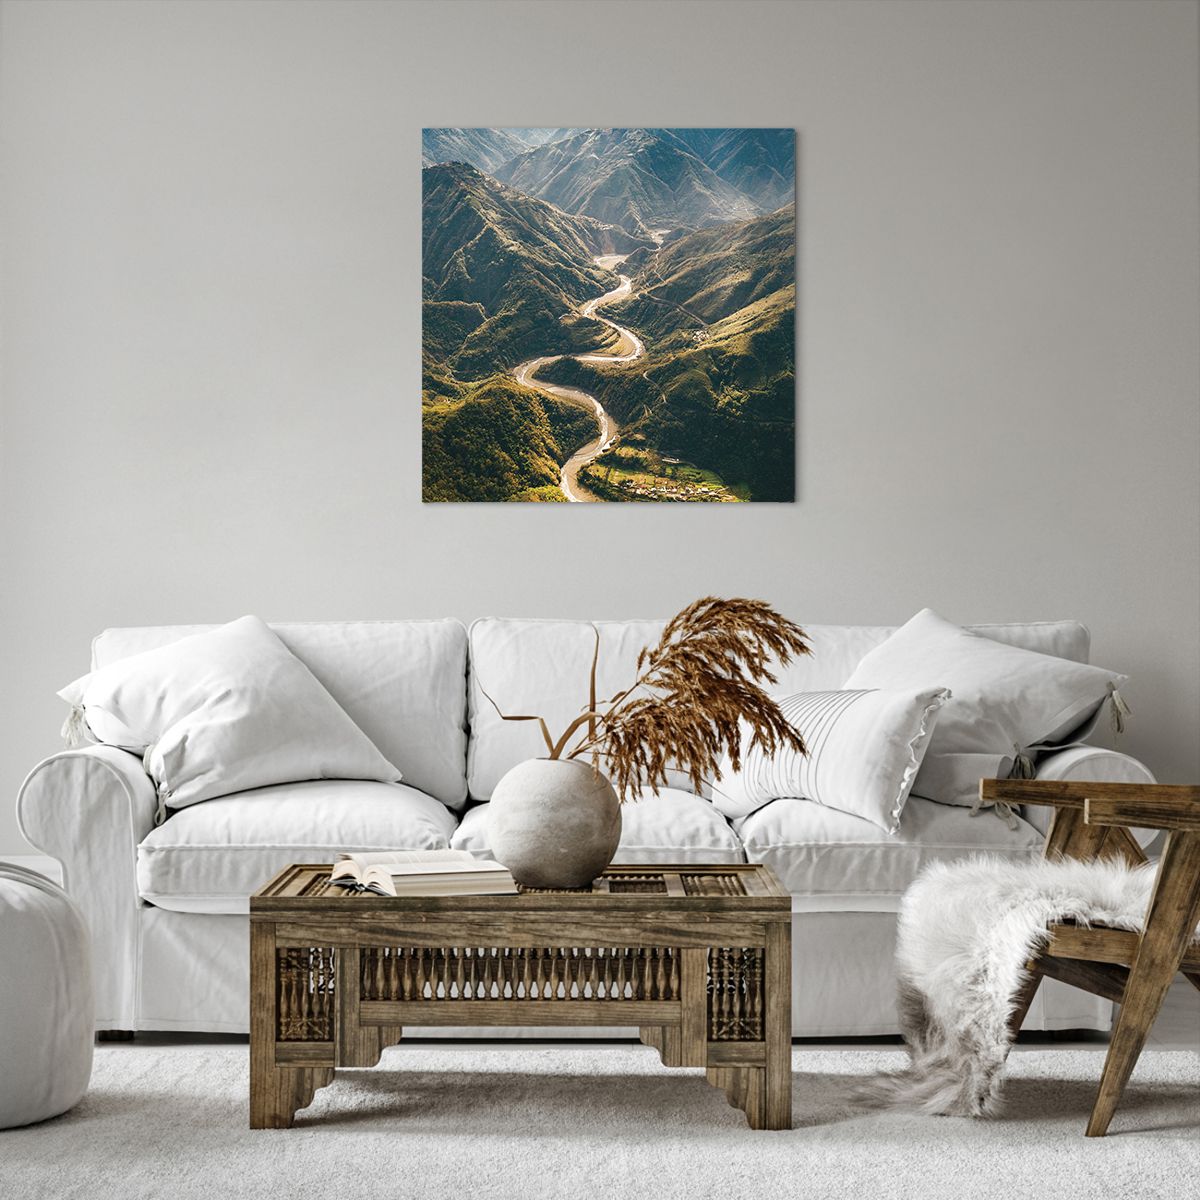 Bild auf Leinwand Berglandschaft, Bild auf Leinwand Bergstraße, Bild auf Leinwand Wald, Bild auf Leinwand Natur, Bild auf Leinwand Vogelperspektive